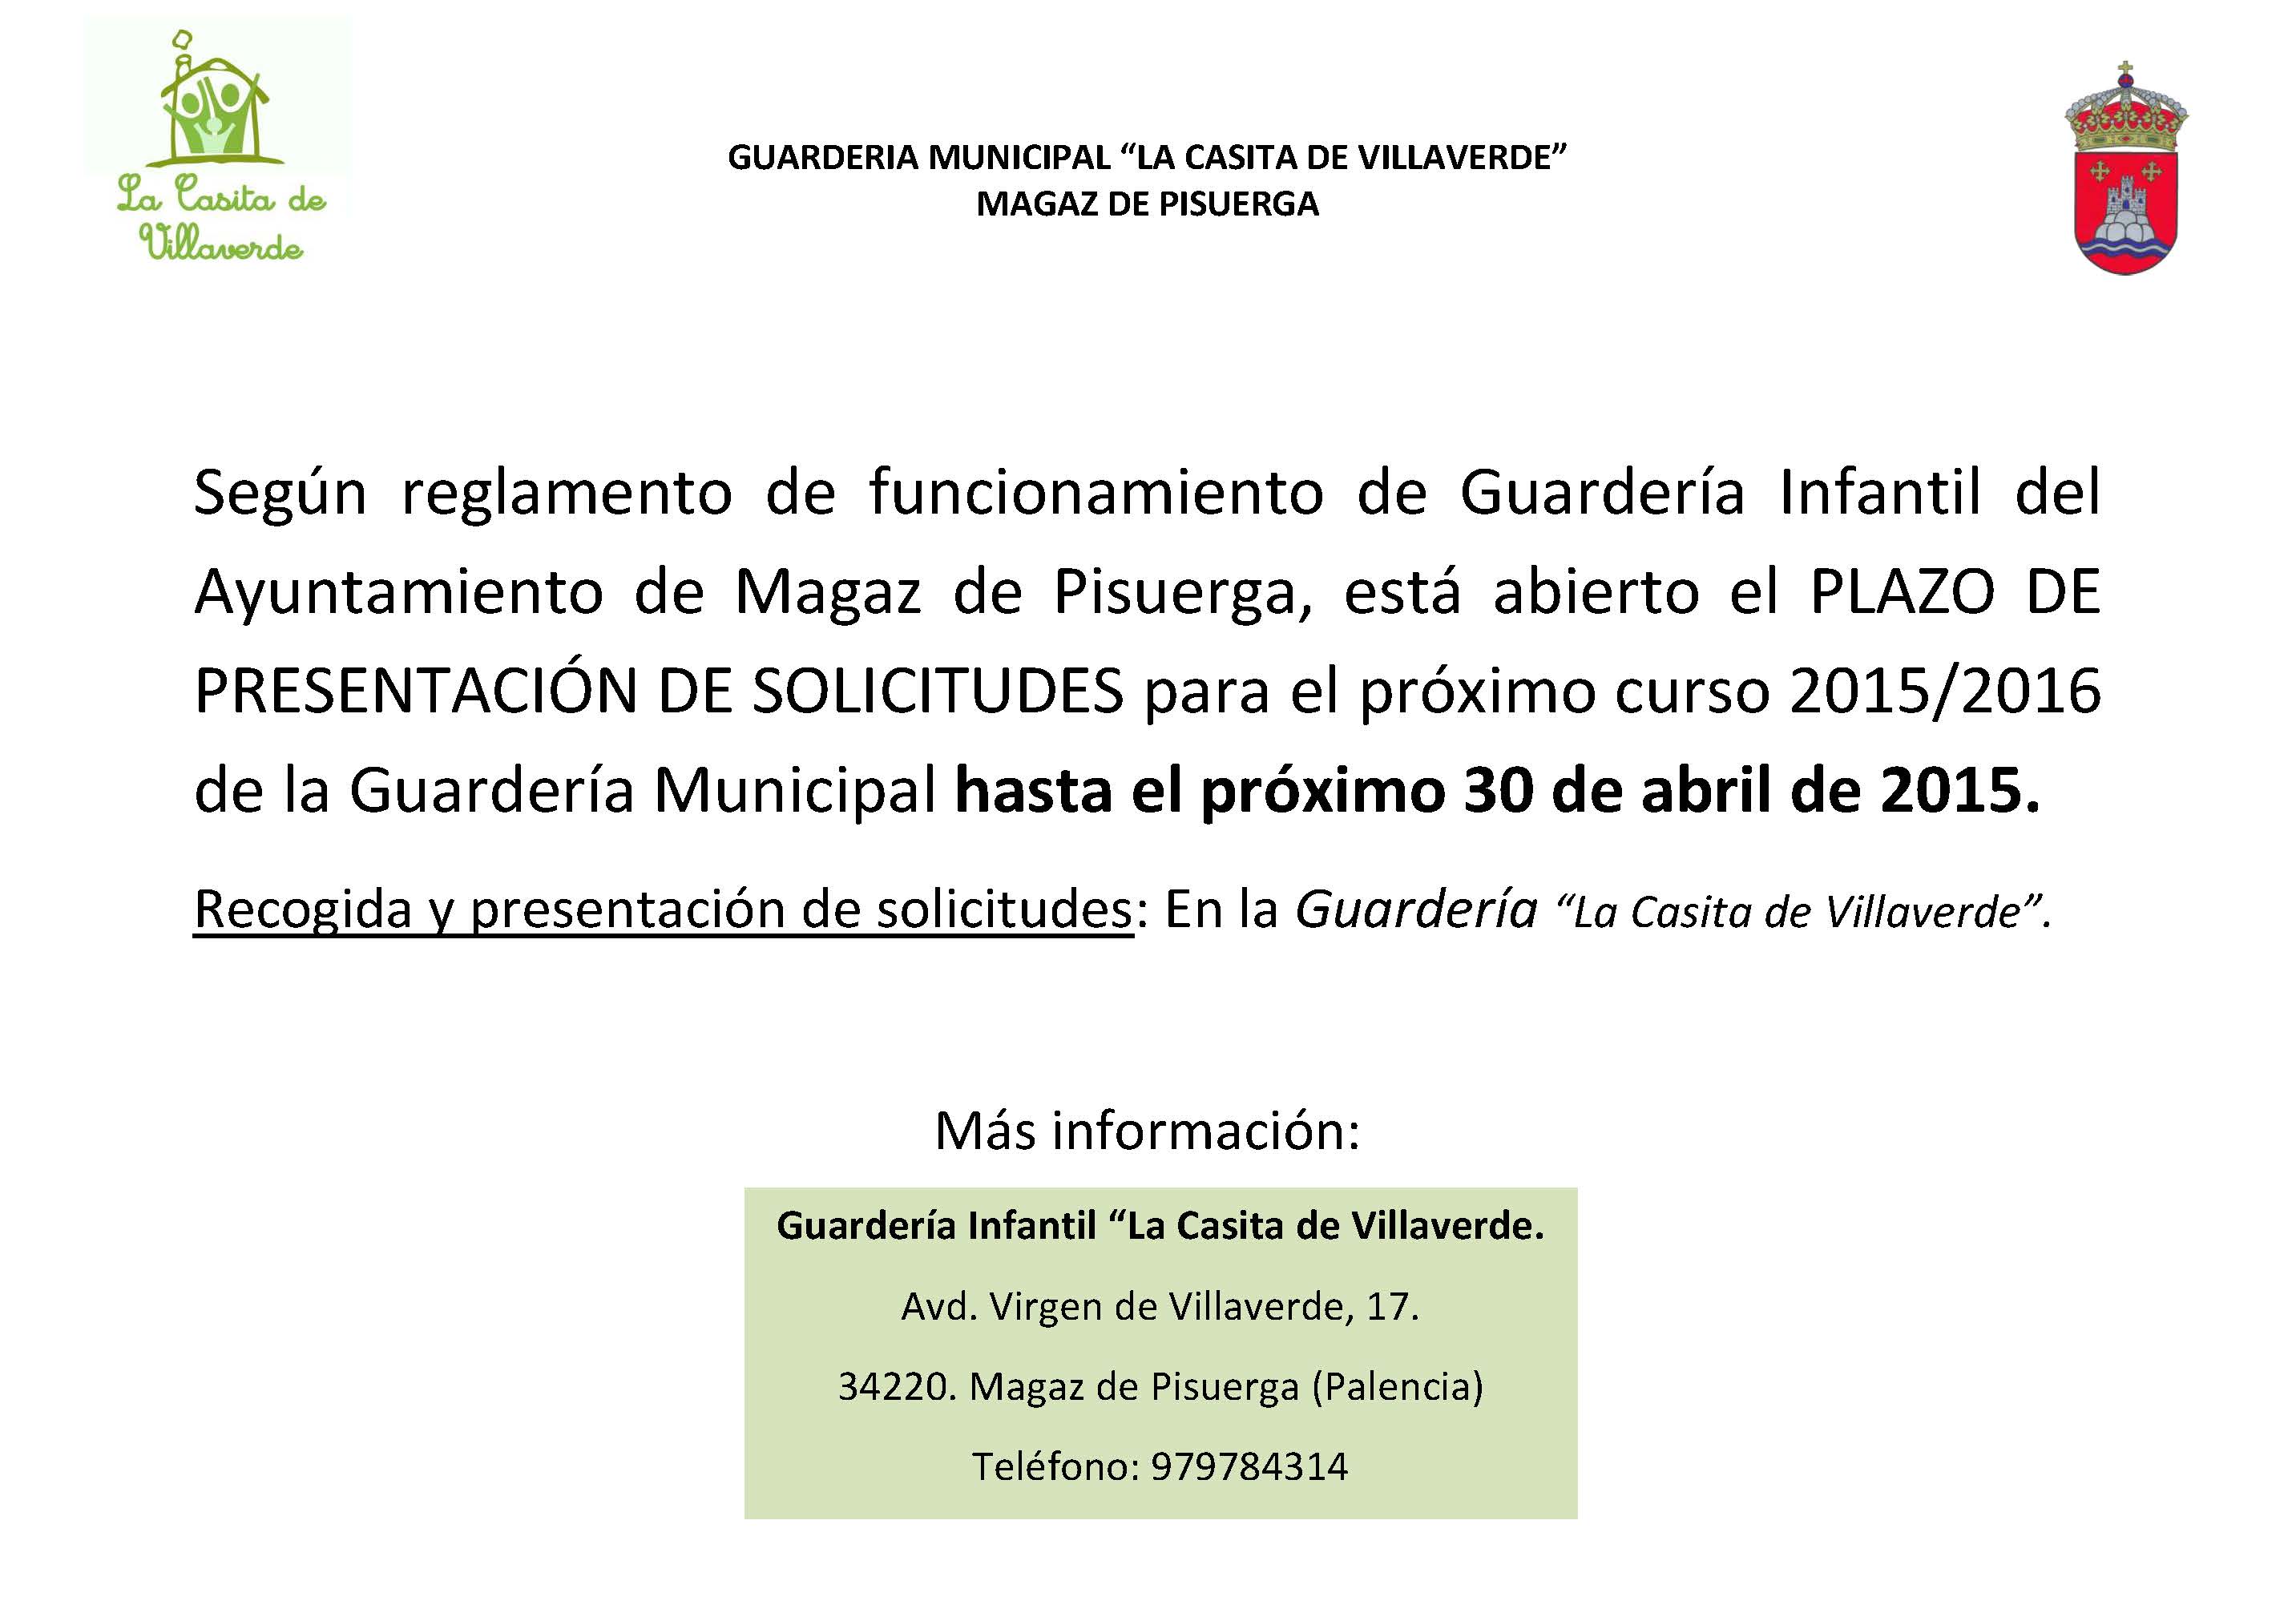 Abierto el PLAZO DE PRESENTACIÓN DE SOLICITUDES de la GUARDERíA MUNICIPAL “LA CASITA DE VILLAVERDE” 2015/2016